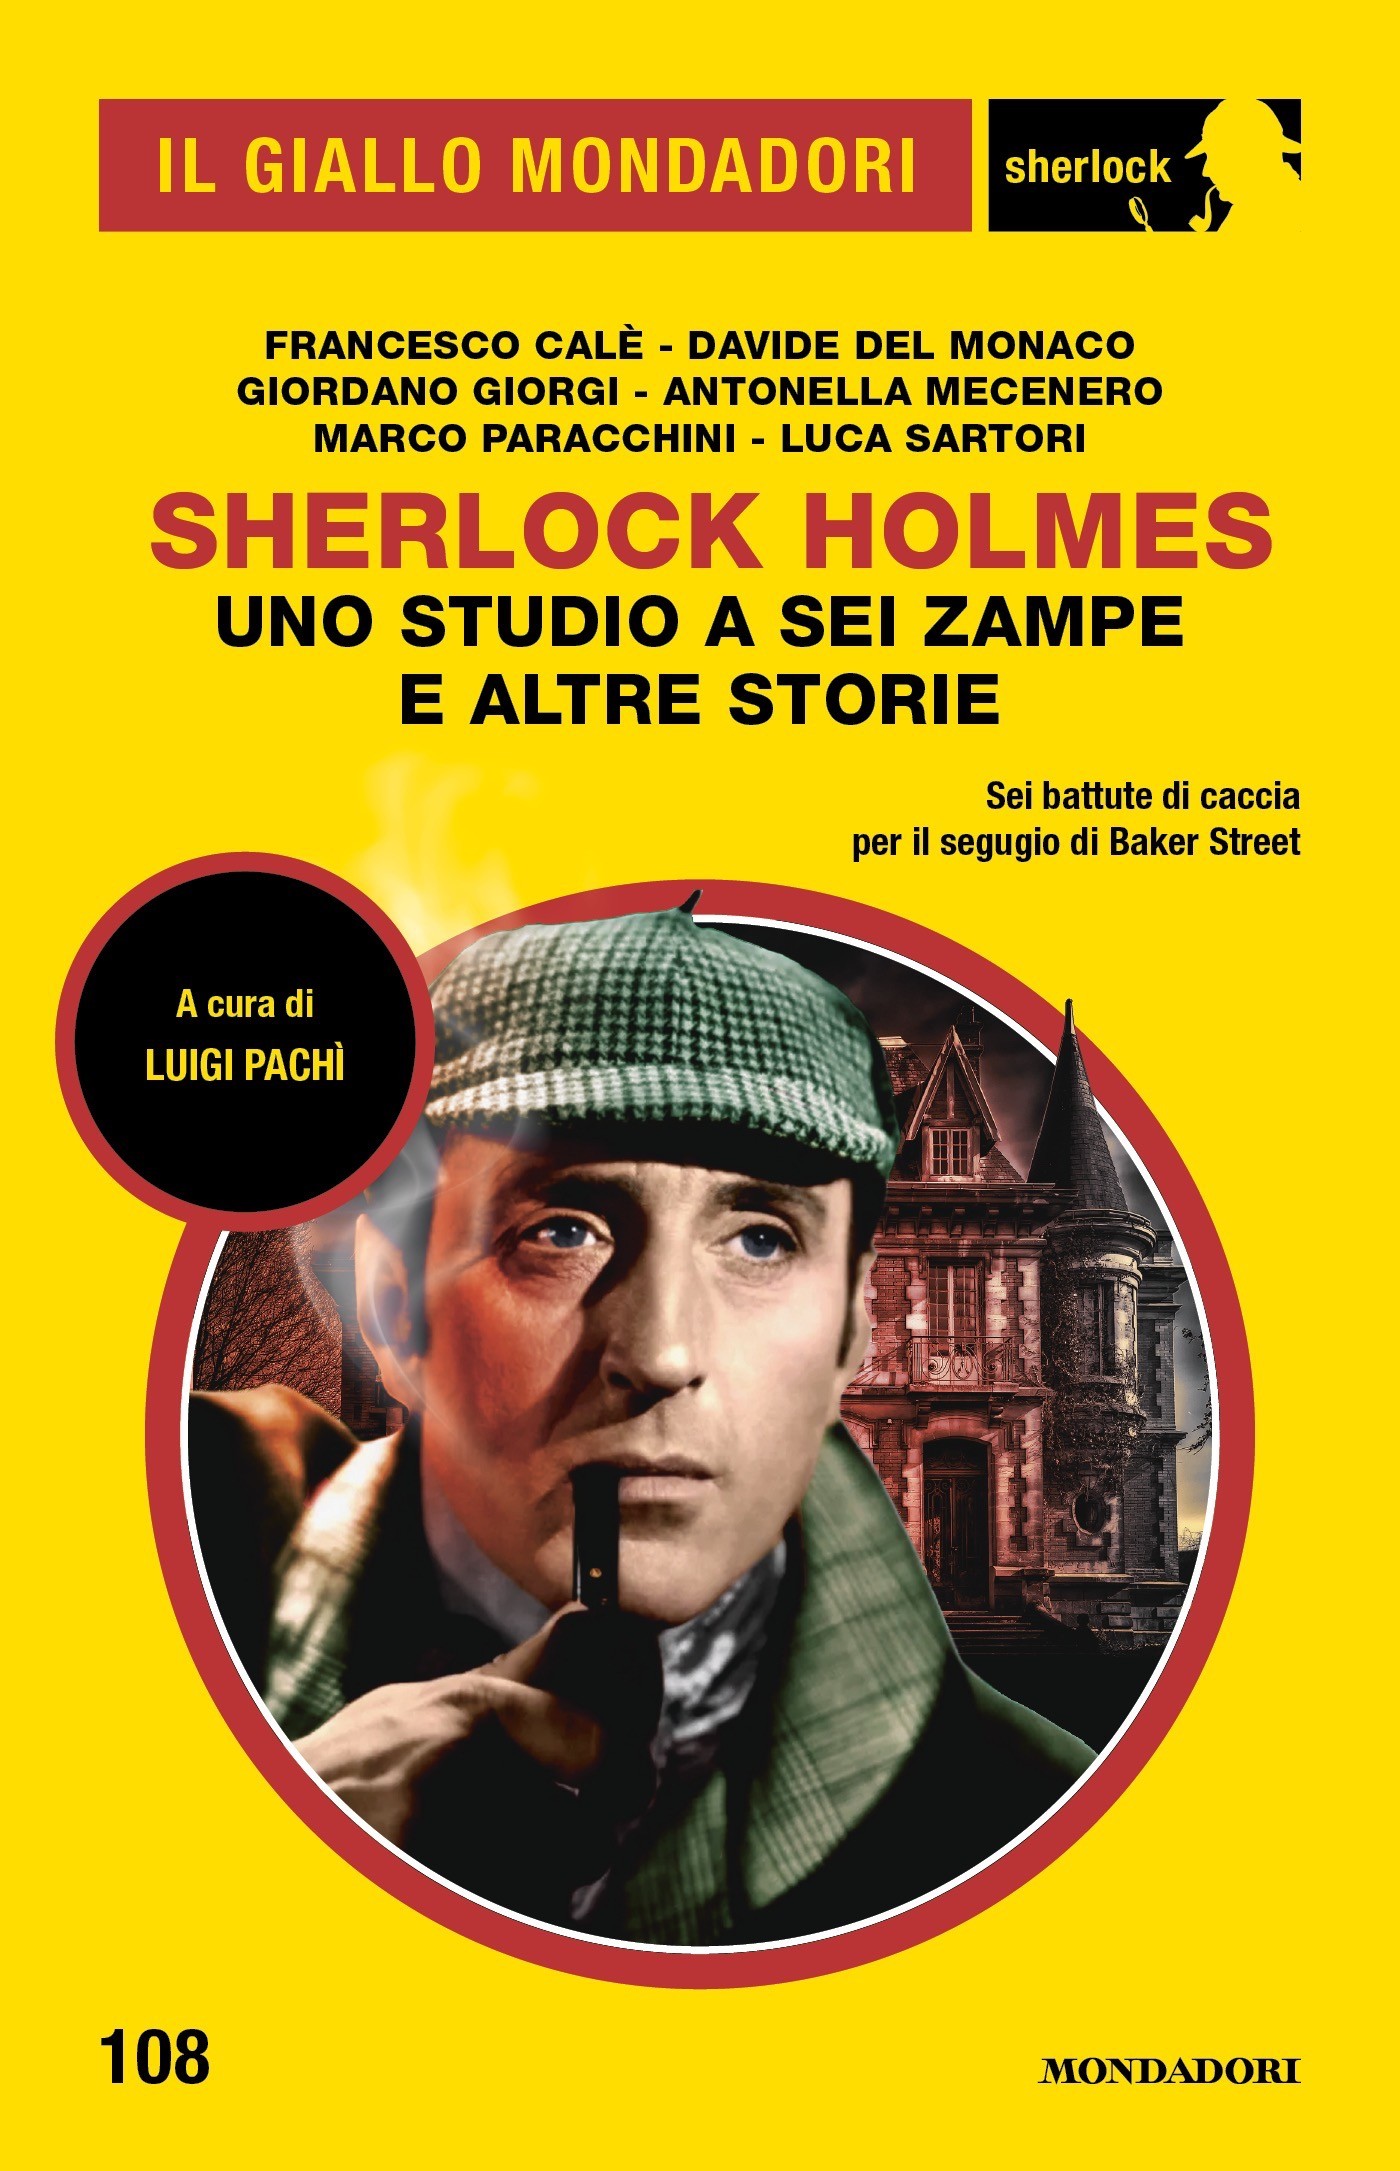 Sherlock Holmes. Uno studio a sei zampe e altre storie (Il Giallo Mondadori Sherlock) - Librerie.coop